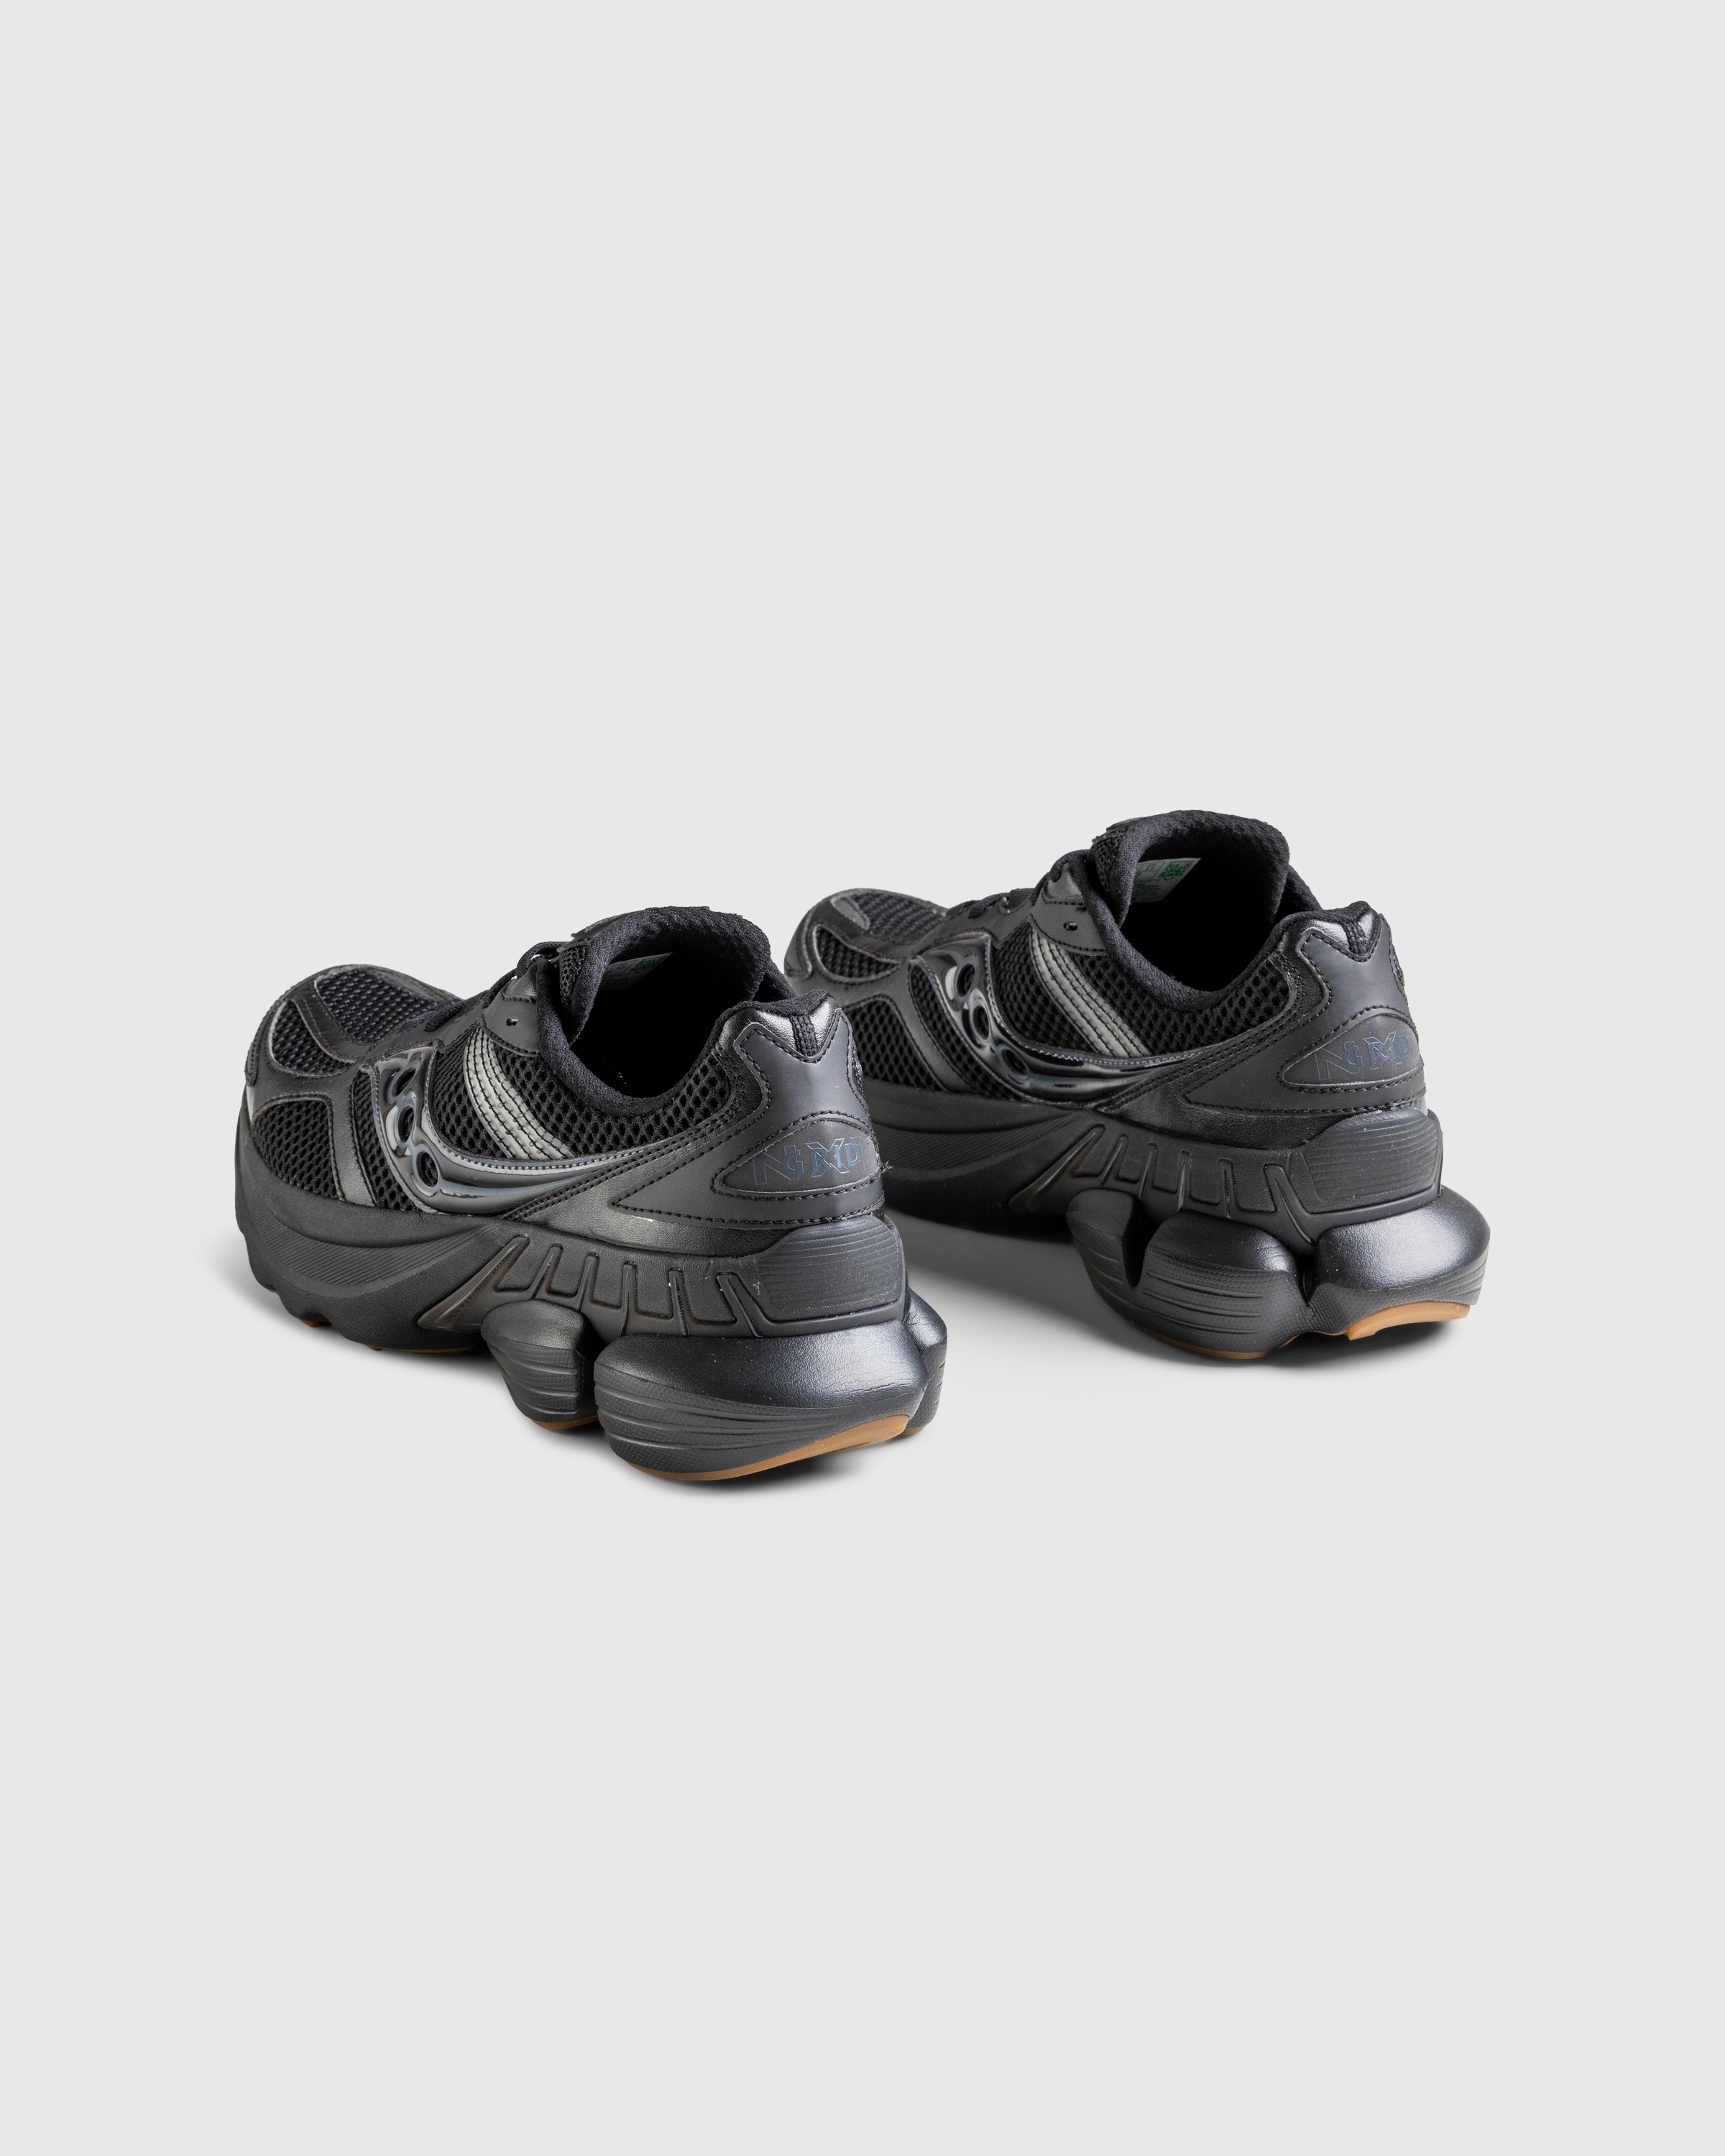 Saucony - GRID NXT - BLACK - Footwear - BLACK - Image 4